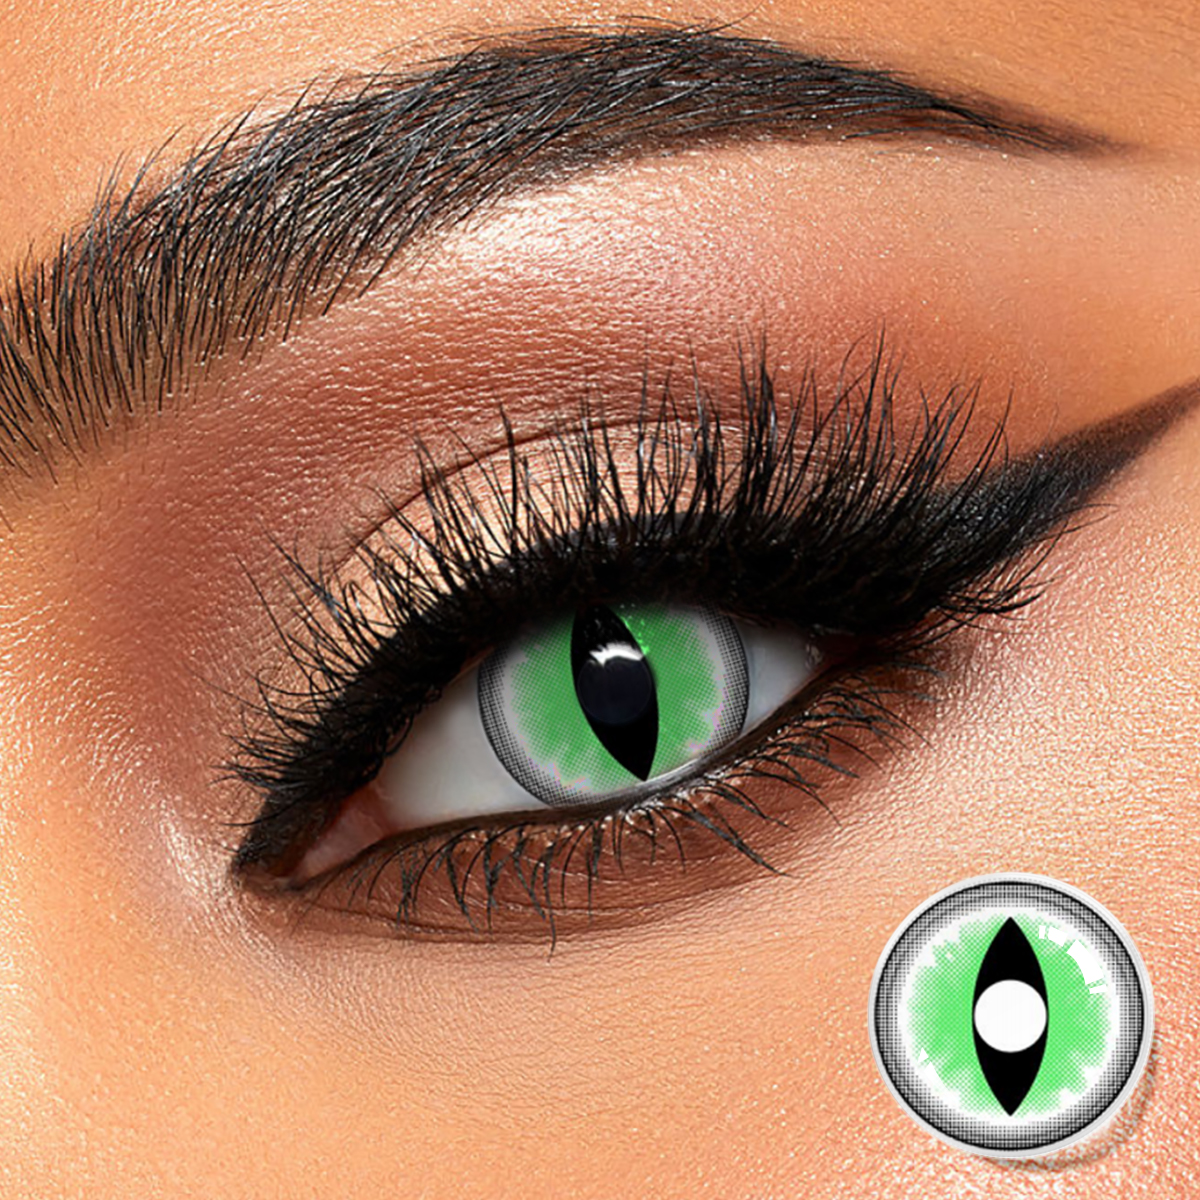 រោងចក្រ CE ISO លក់ដុំក្នុងតម្លៃថោក DBeyes super natural colored contacts កែវភ្នែកពណ៌បៃតង